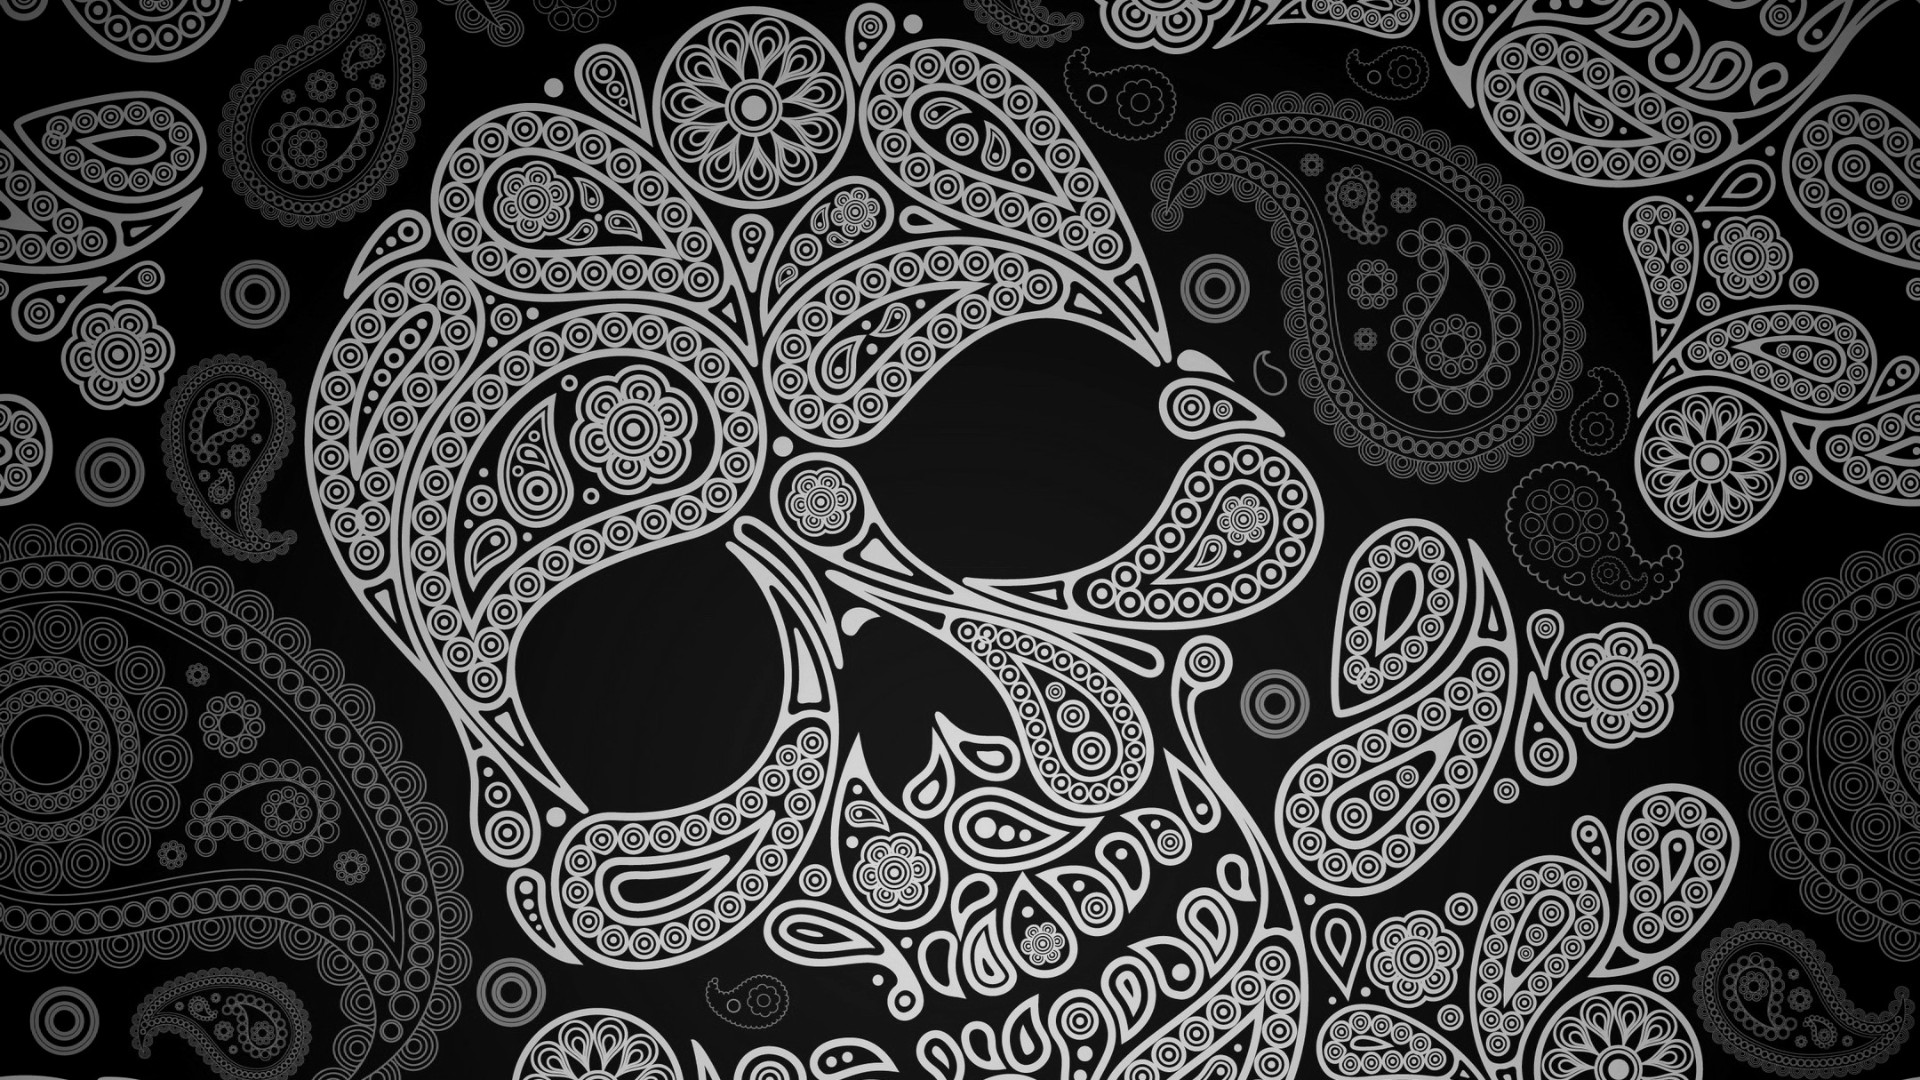 1920x1080 Girly Sugar Skull Wallpaper Paisley skull wallpaper